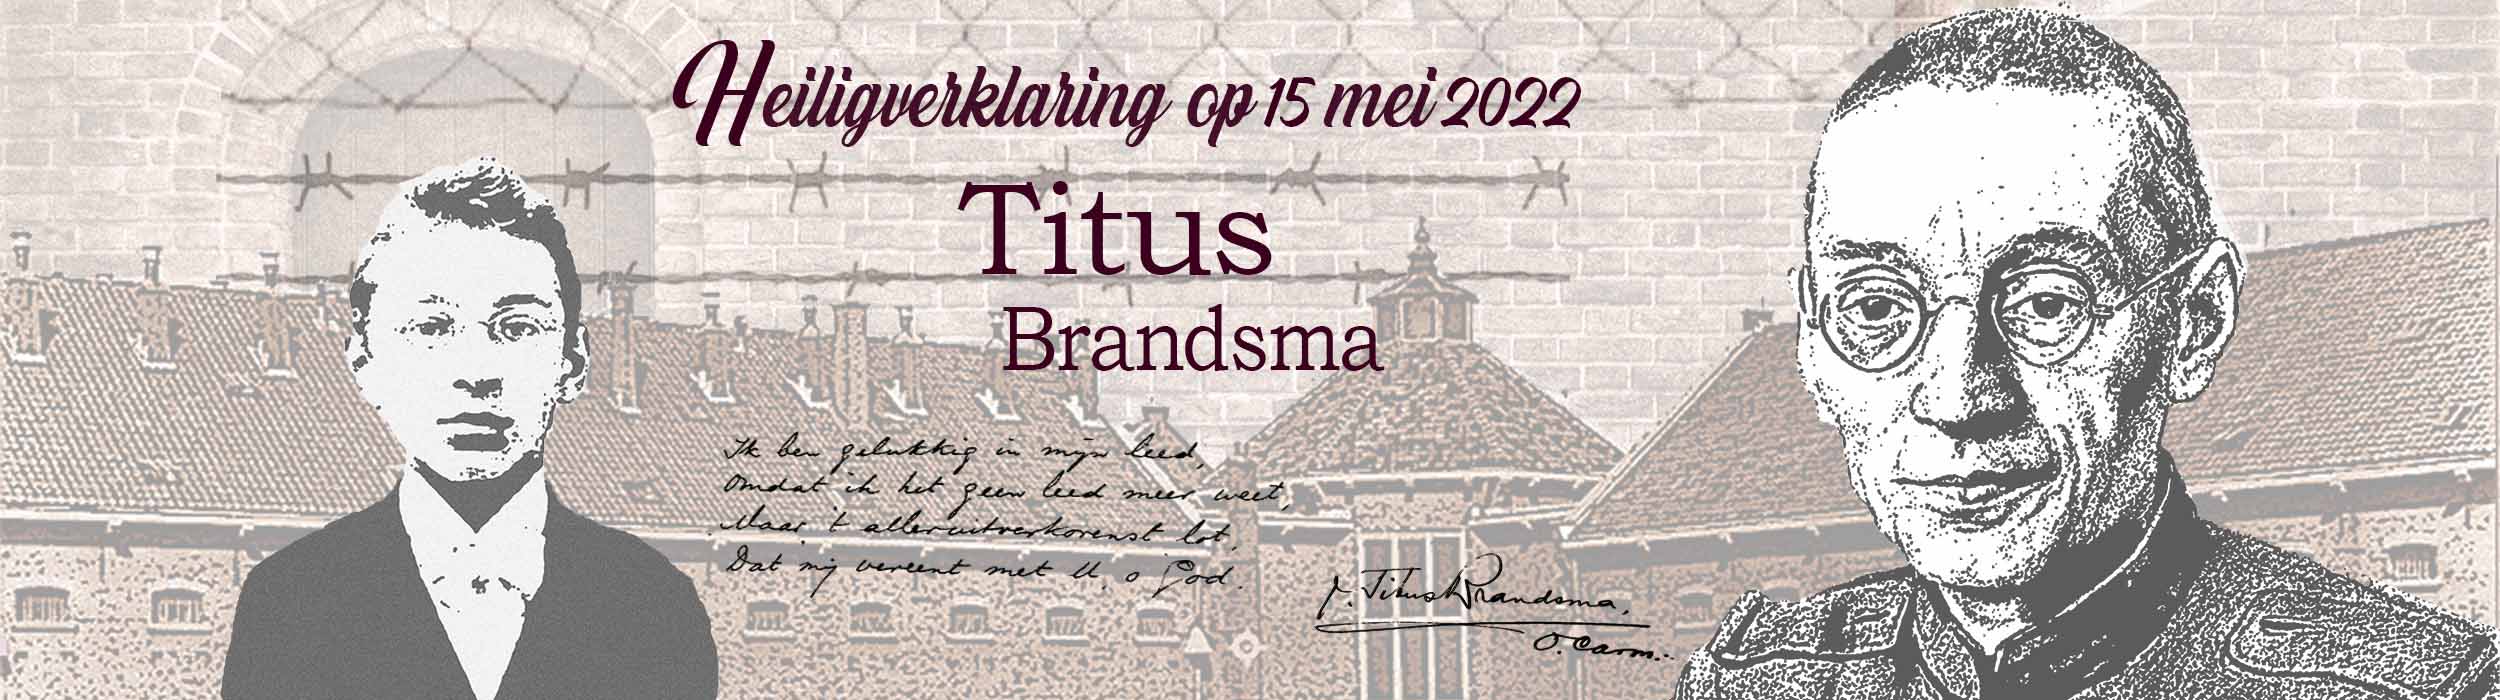 Op 15 mei 2022 wordt Titus Brandsma heilig verklaard door paus Franciscus